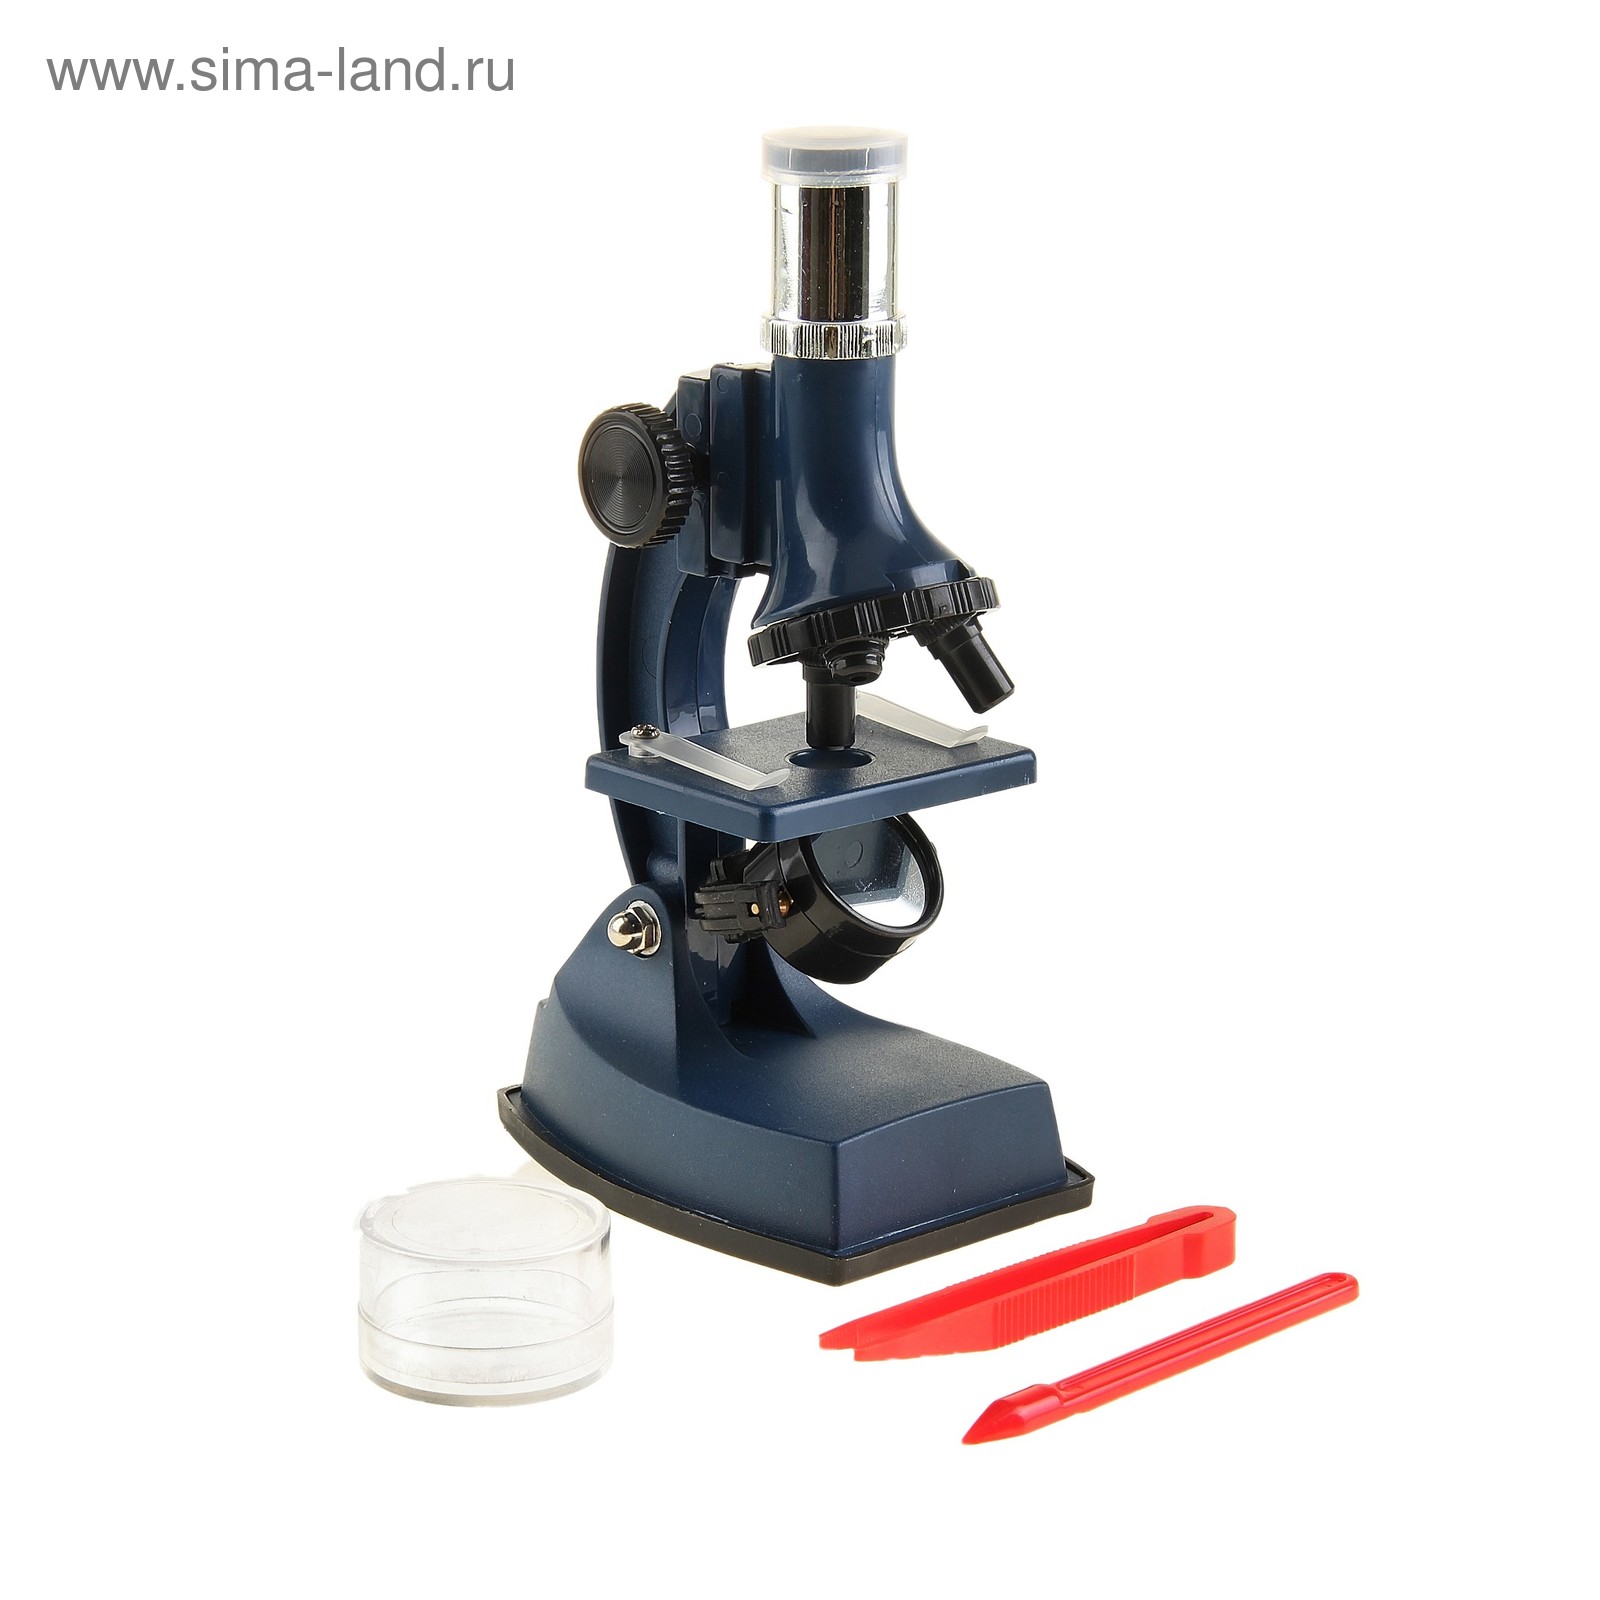 Микроскоп сувенирный "Опыт" 600х, с подсветкой, набор для исследований